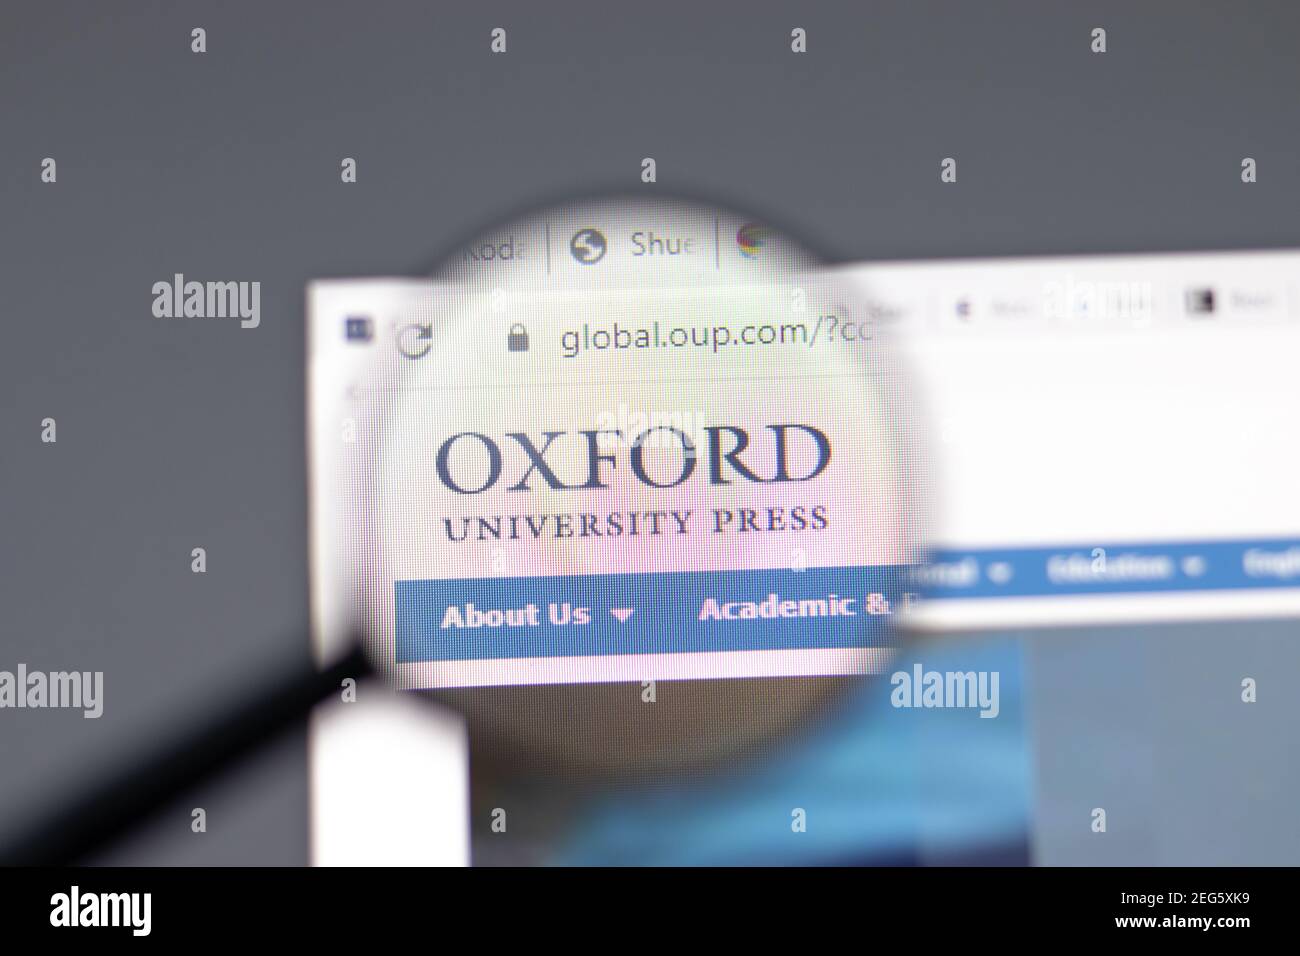 New York, USA - 15 febbraio 2021: Sito web Oxford University Press nel browser con logo aziendale, Editoriale illustrativo Foto Stock